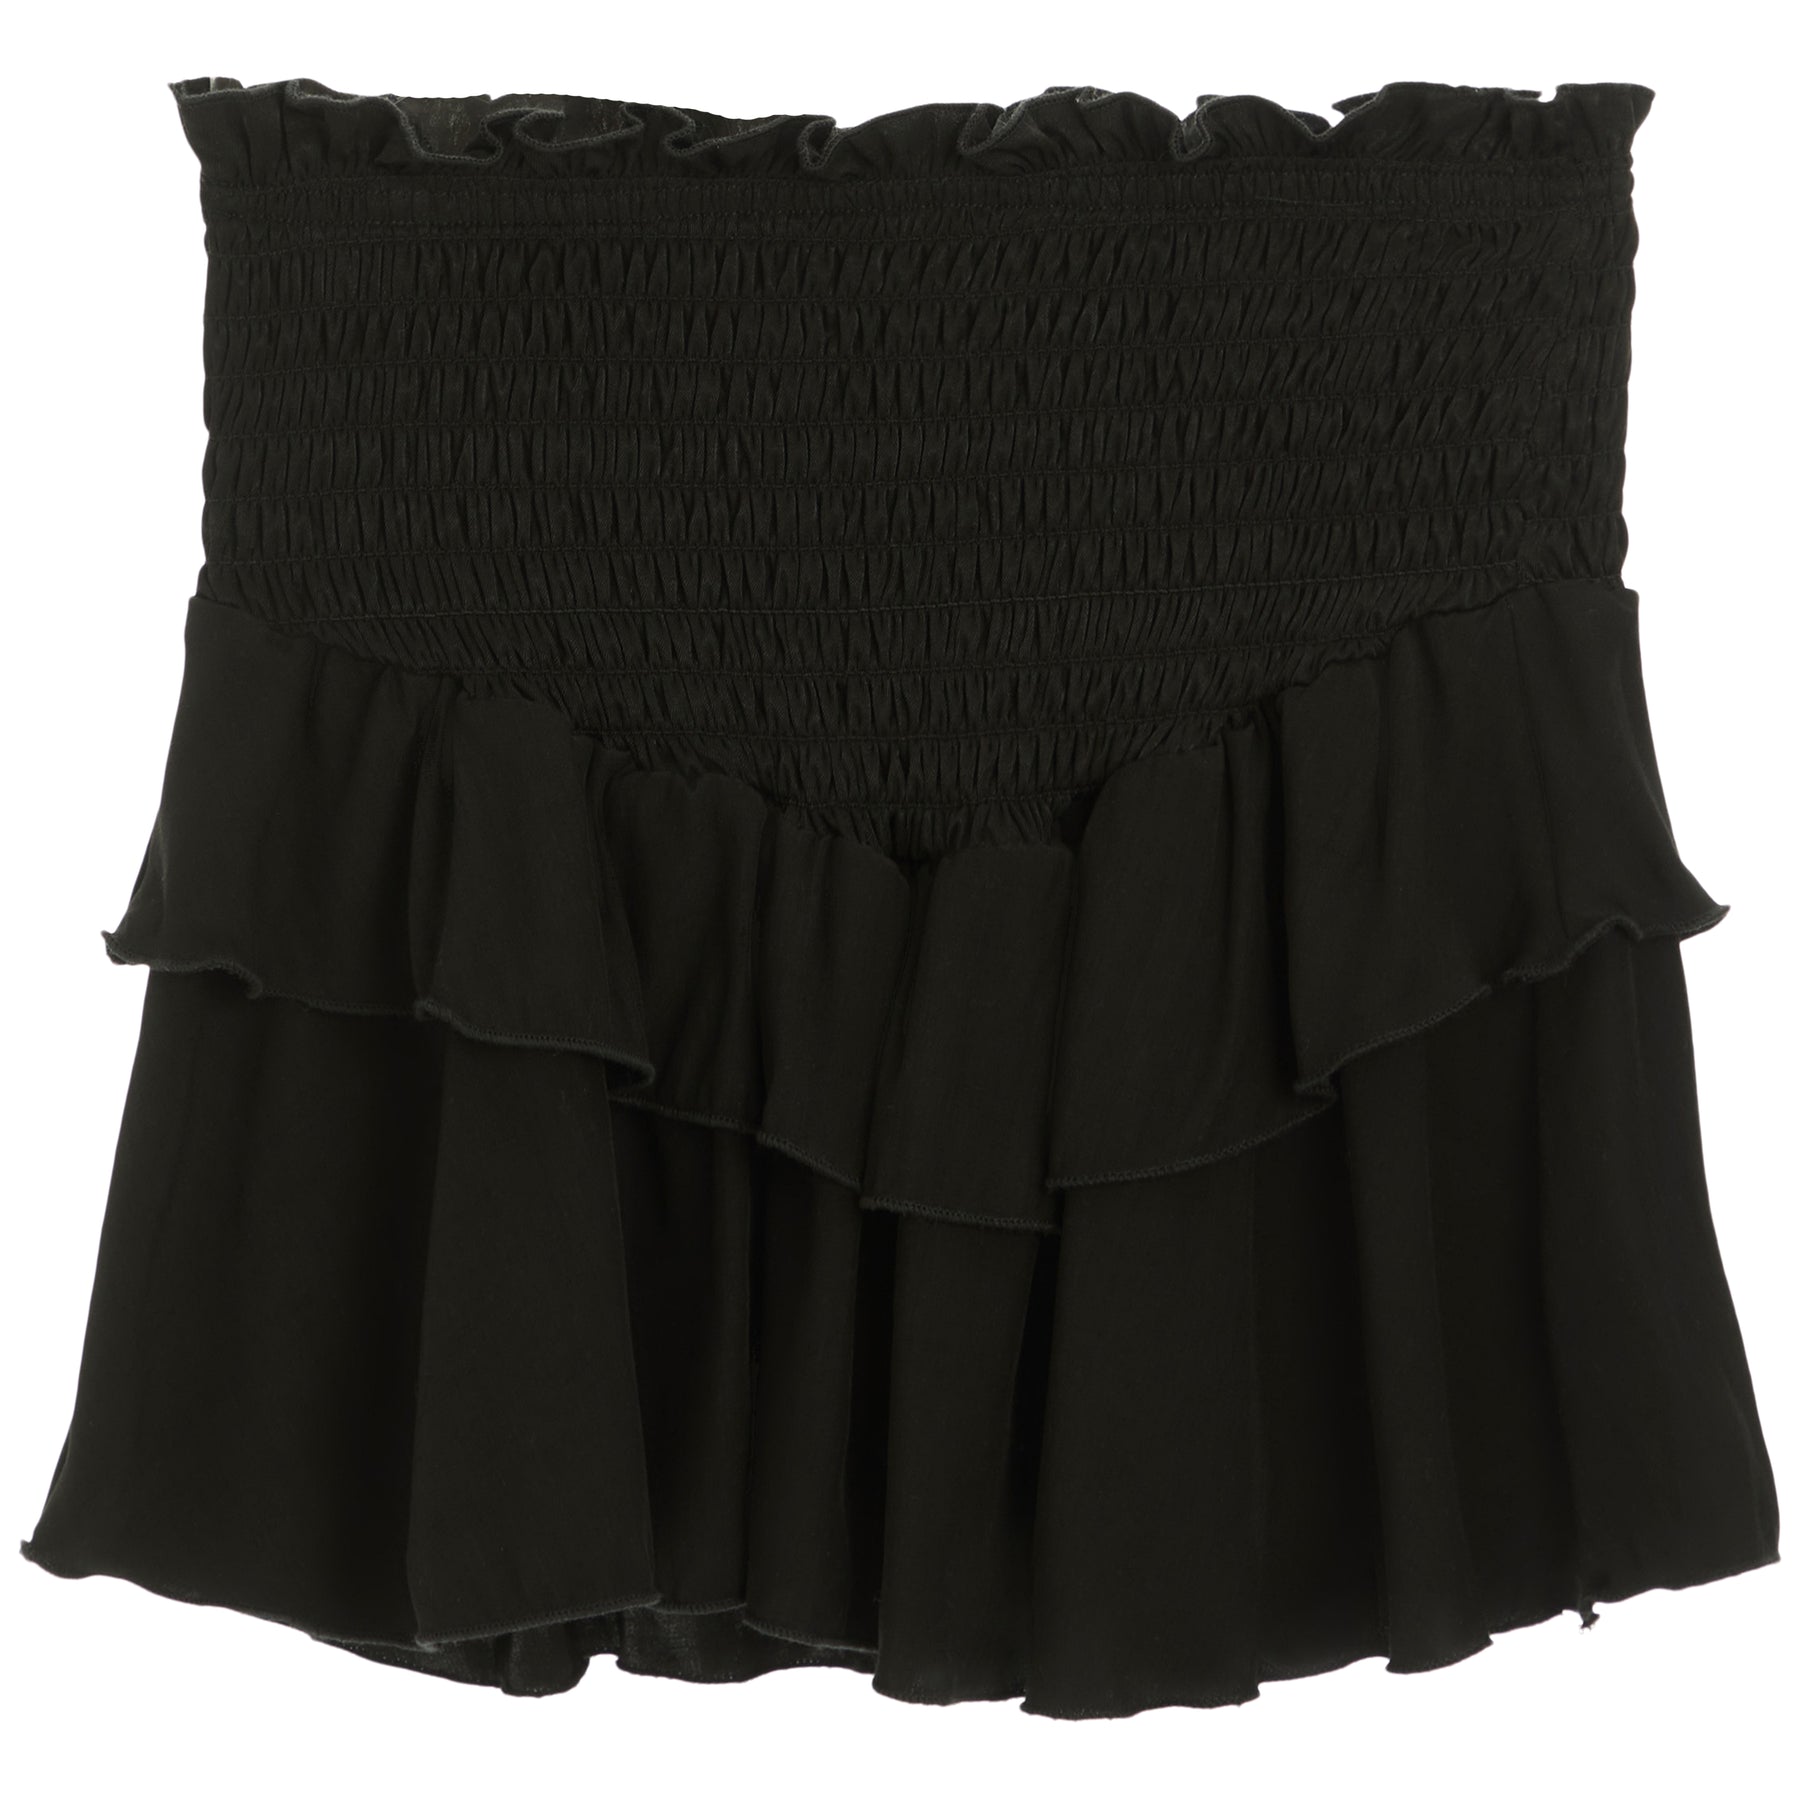 Ruffle Skirt